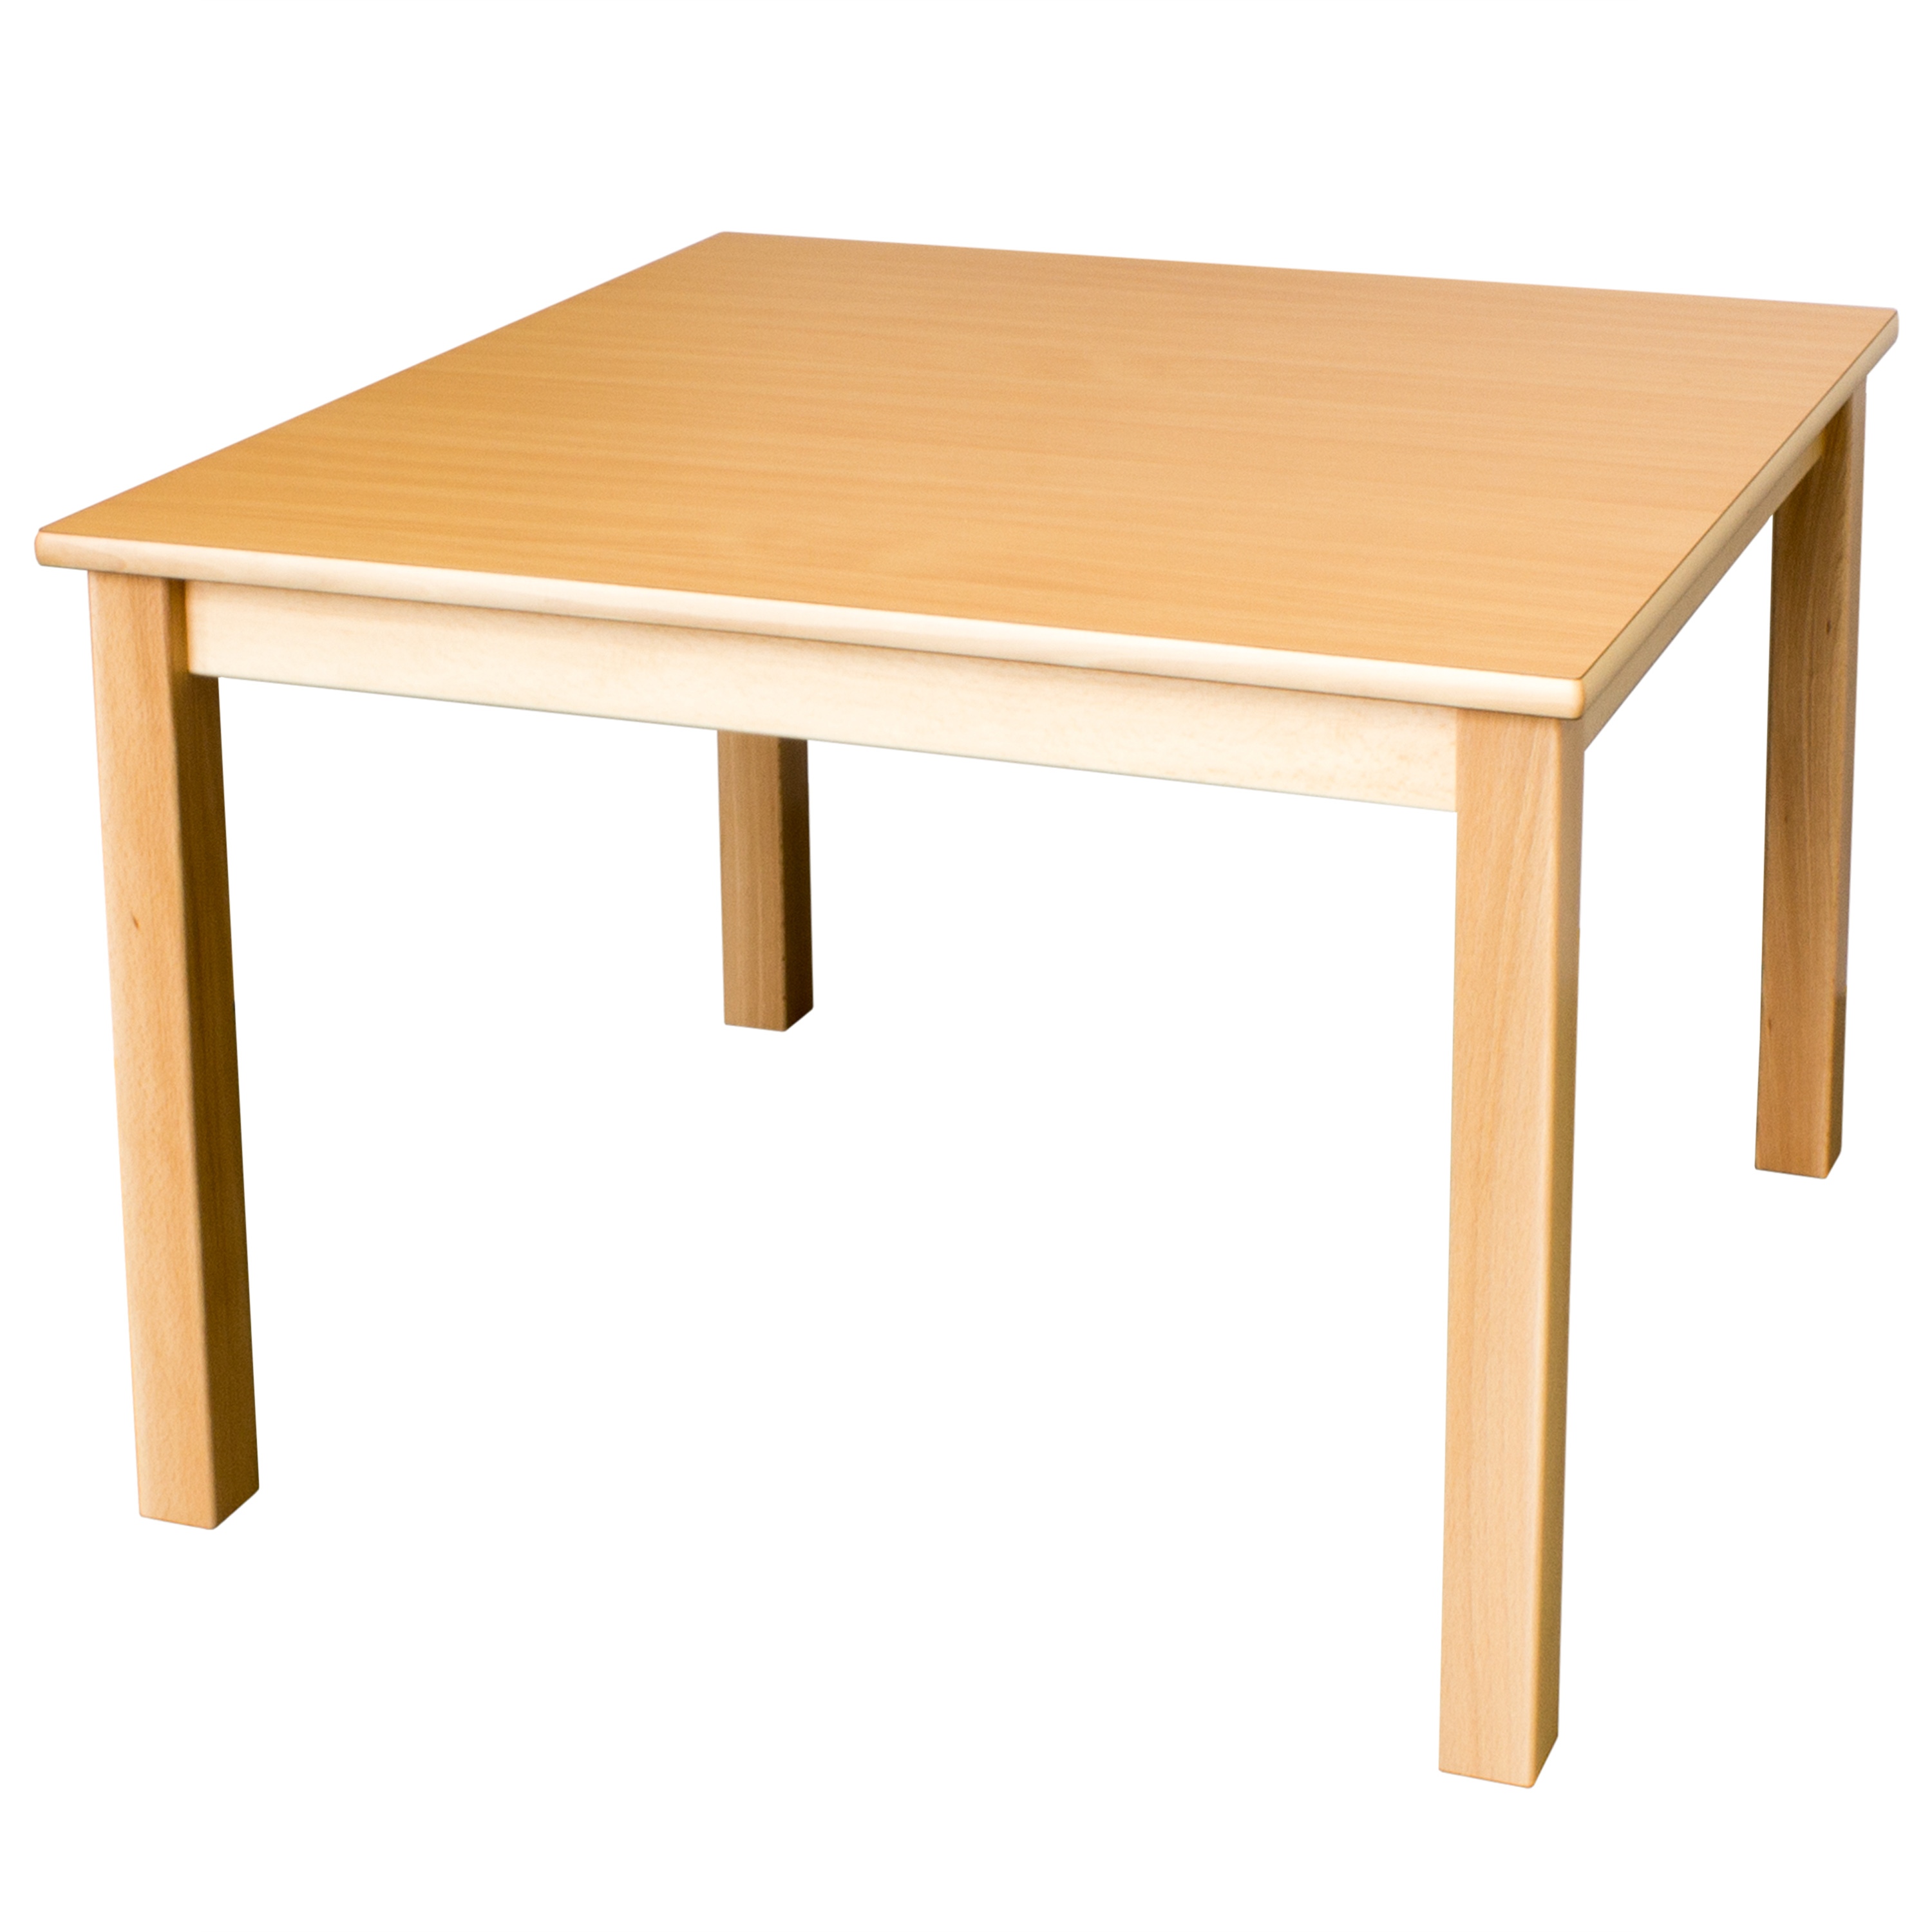 Quadrattisch in der Größe 60 x 60 cm, Tischhöhe 58 cm